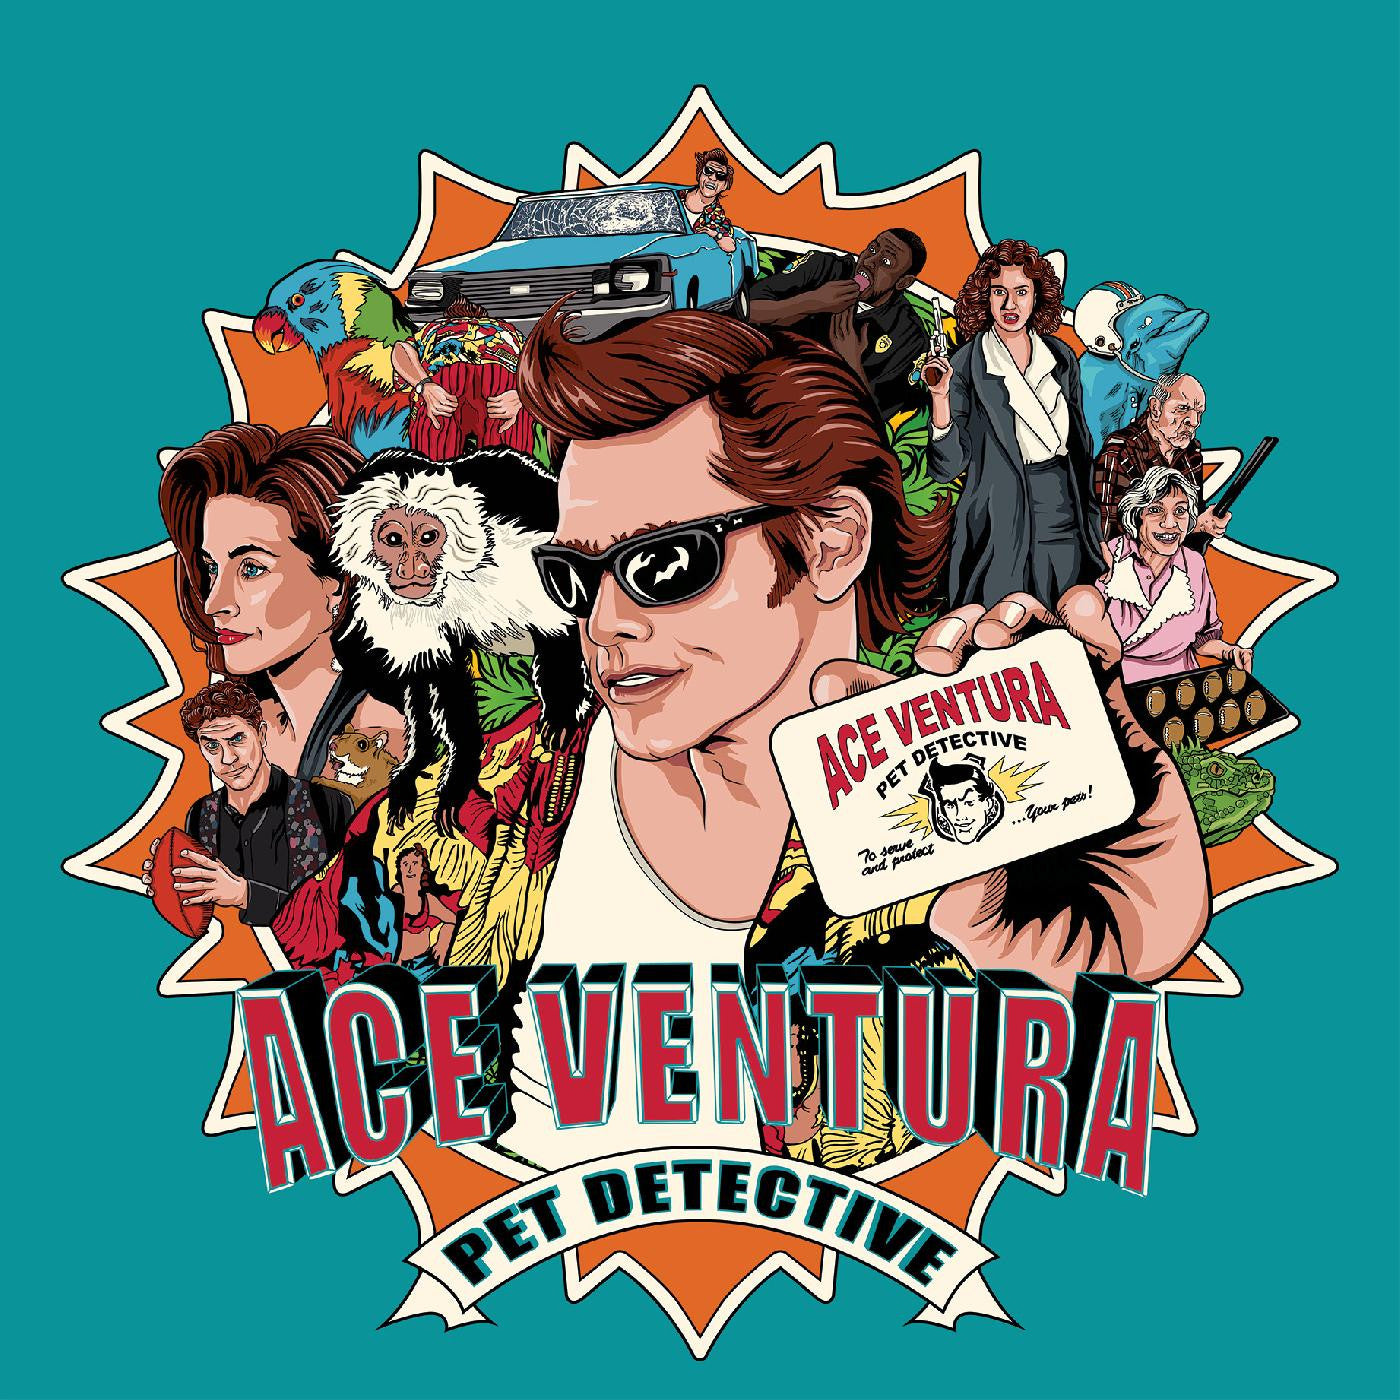 Ace Ventura: Pet Detective - Original Motion Picture Score